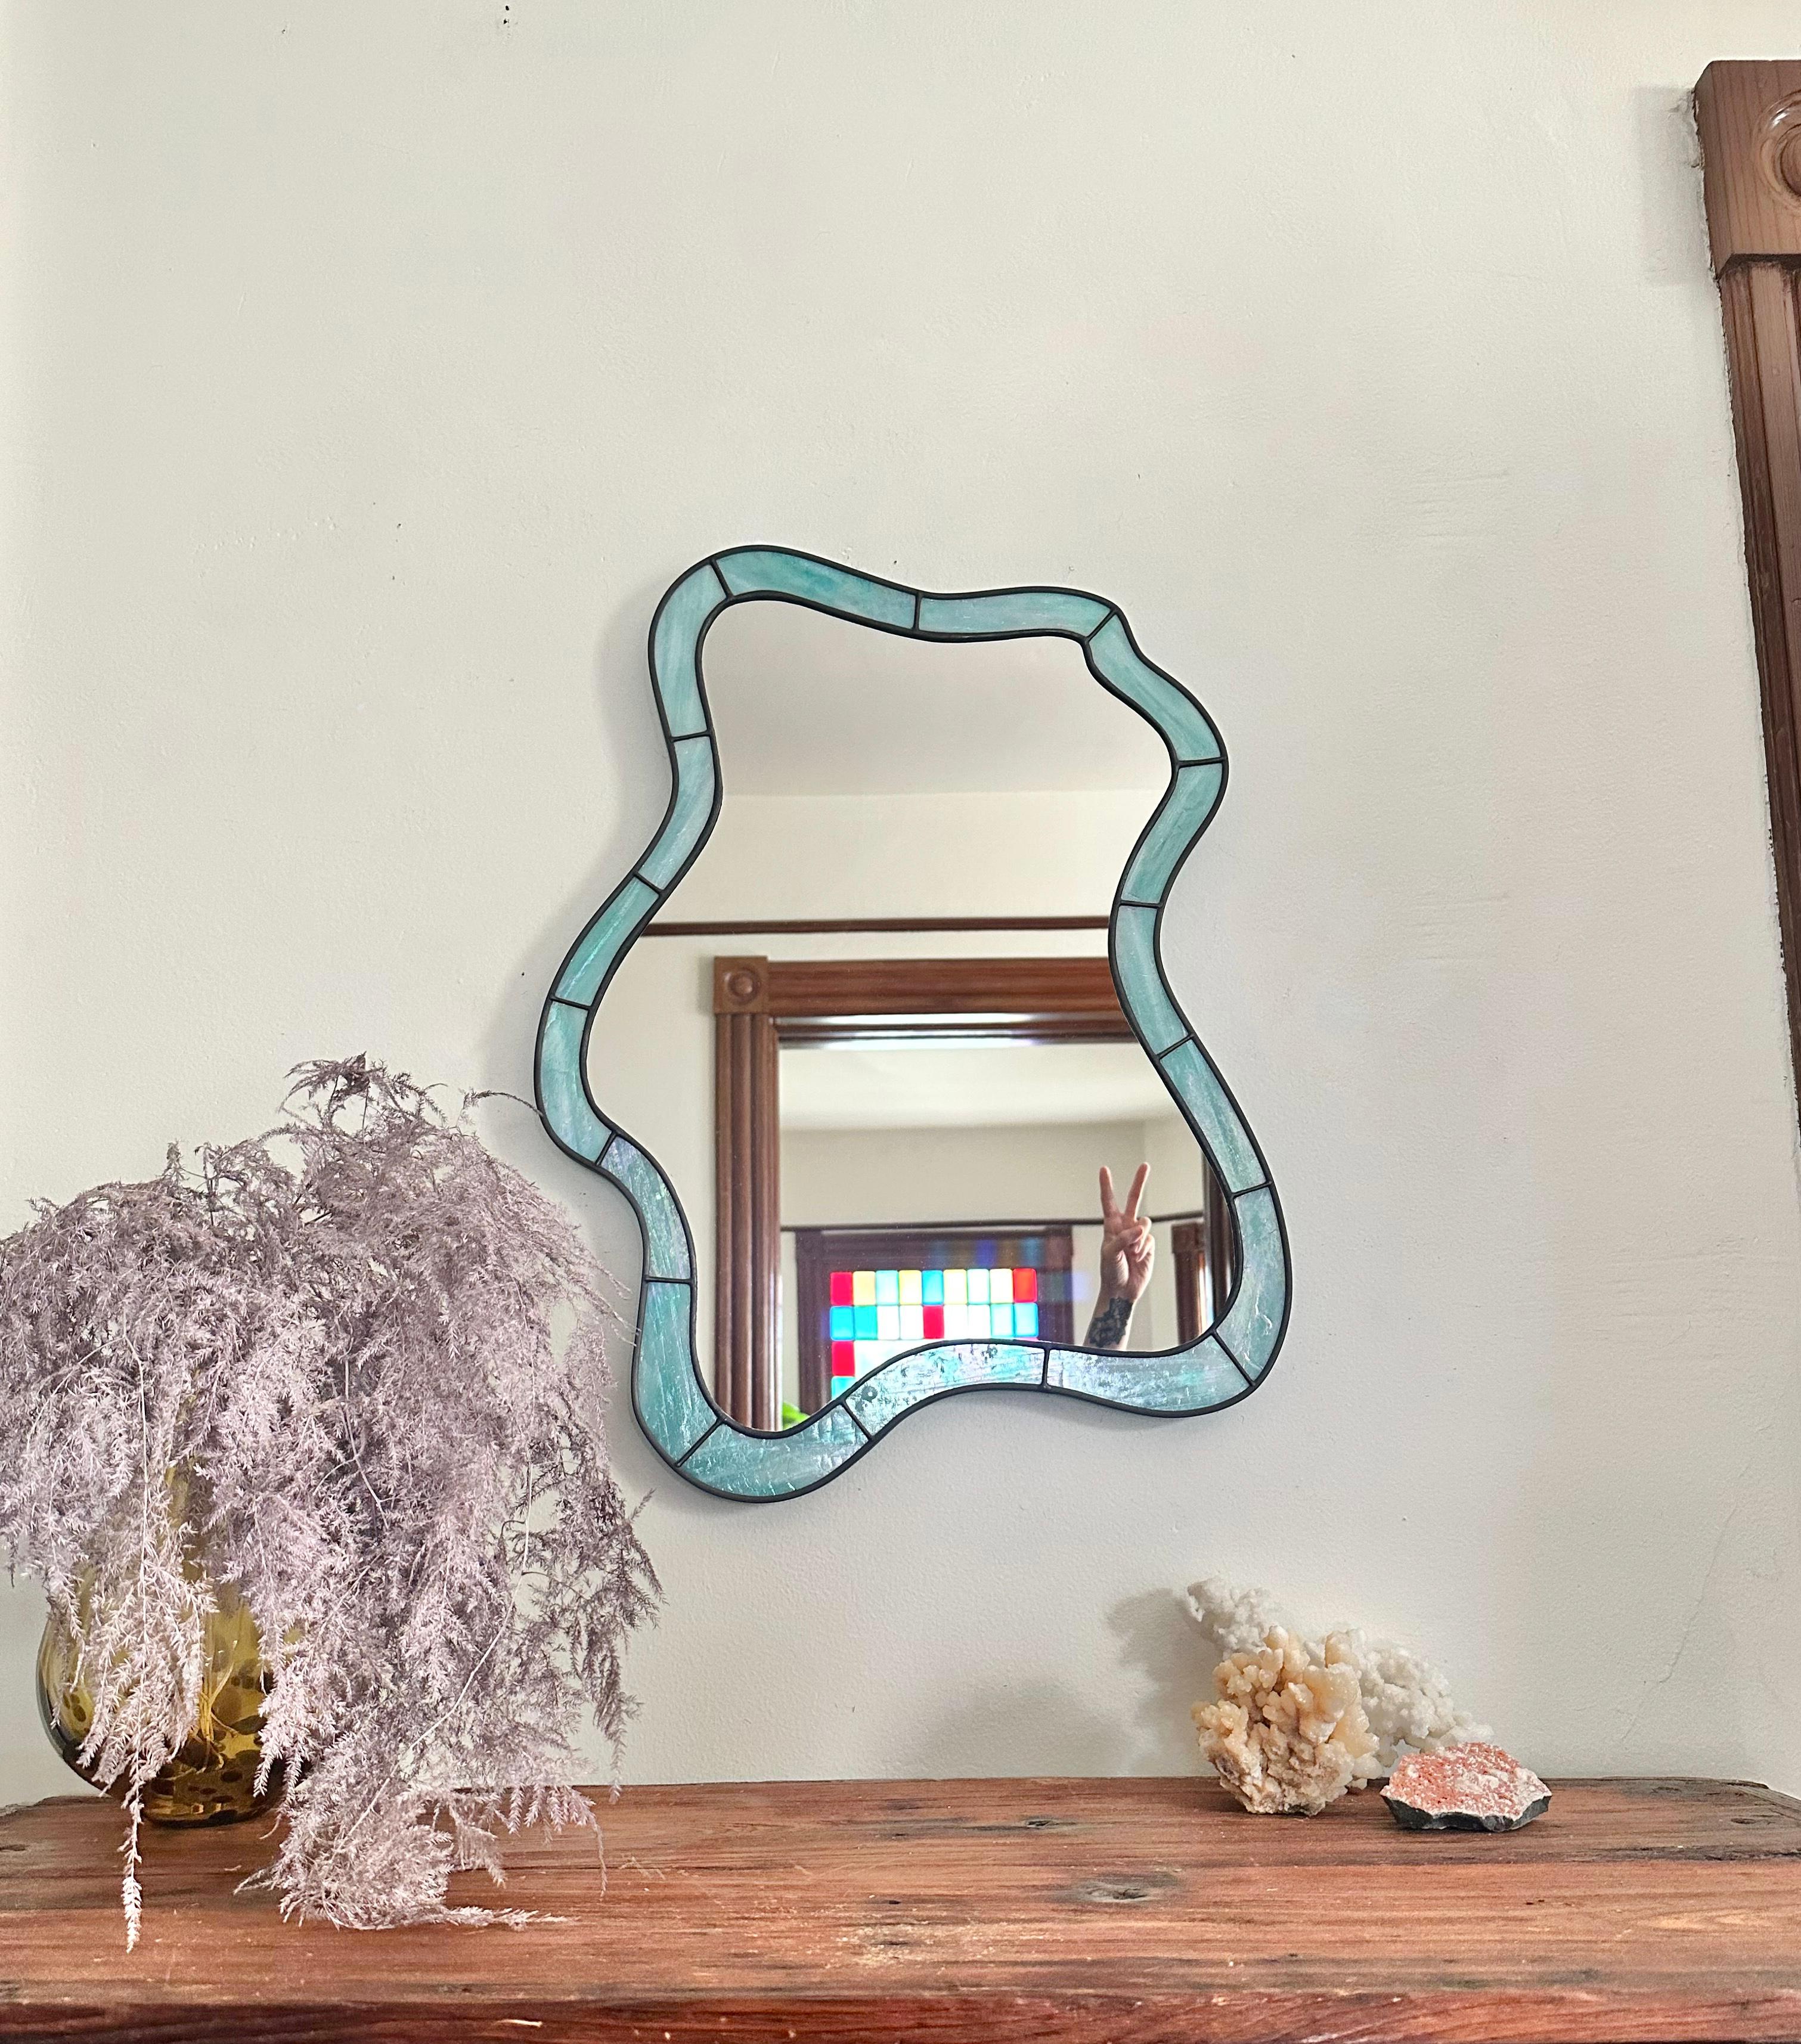 Fabriqué en Iridescent unique en son genre  Turquoise  Vitrail coloré, le miroir Cloud brille dans tous les espaces qu'il habite.

(Cette pièce est fabriquée sur commande et, en raison du caractère unique du verre, votre pièce différera légèrement